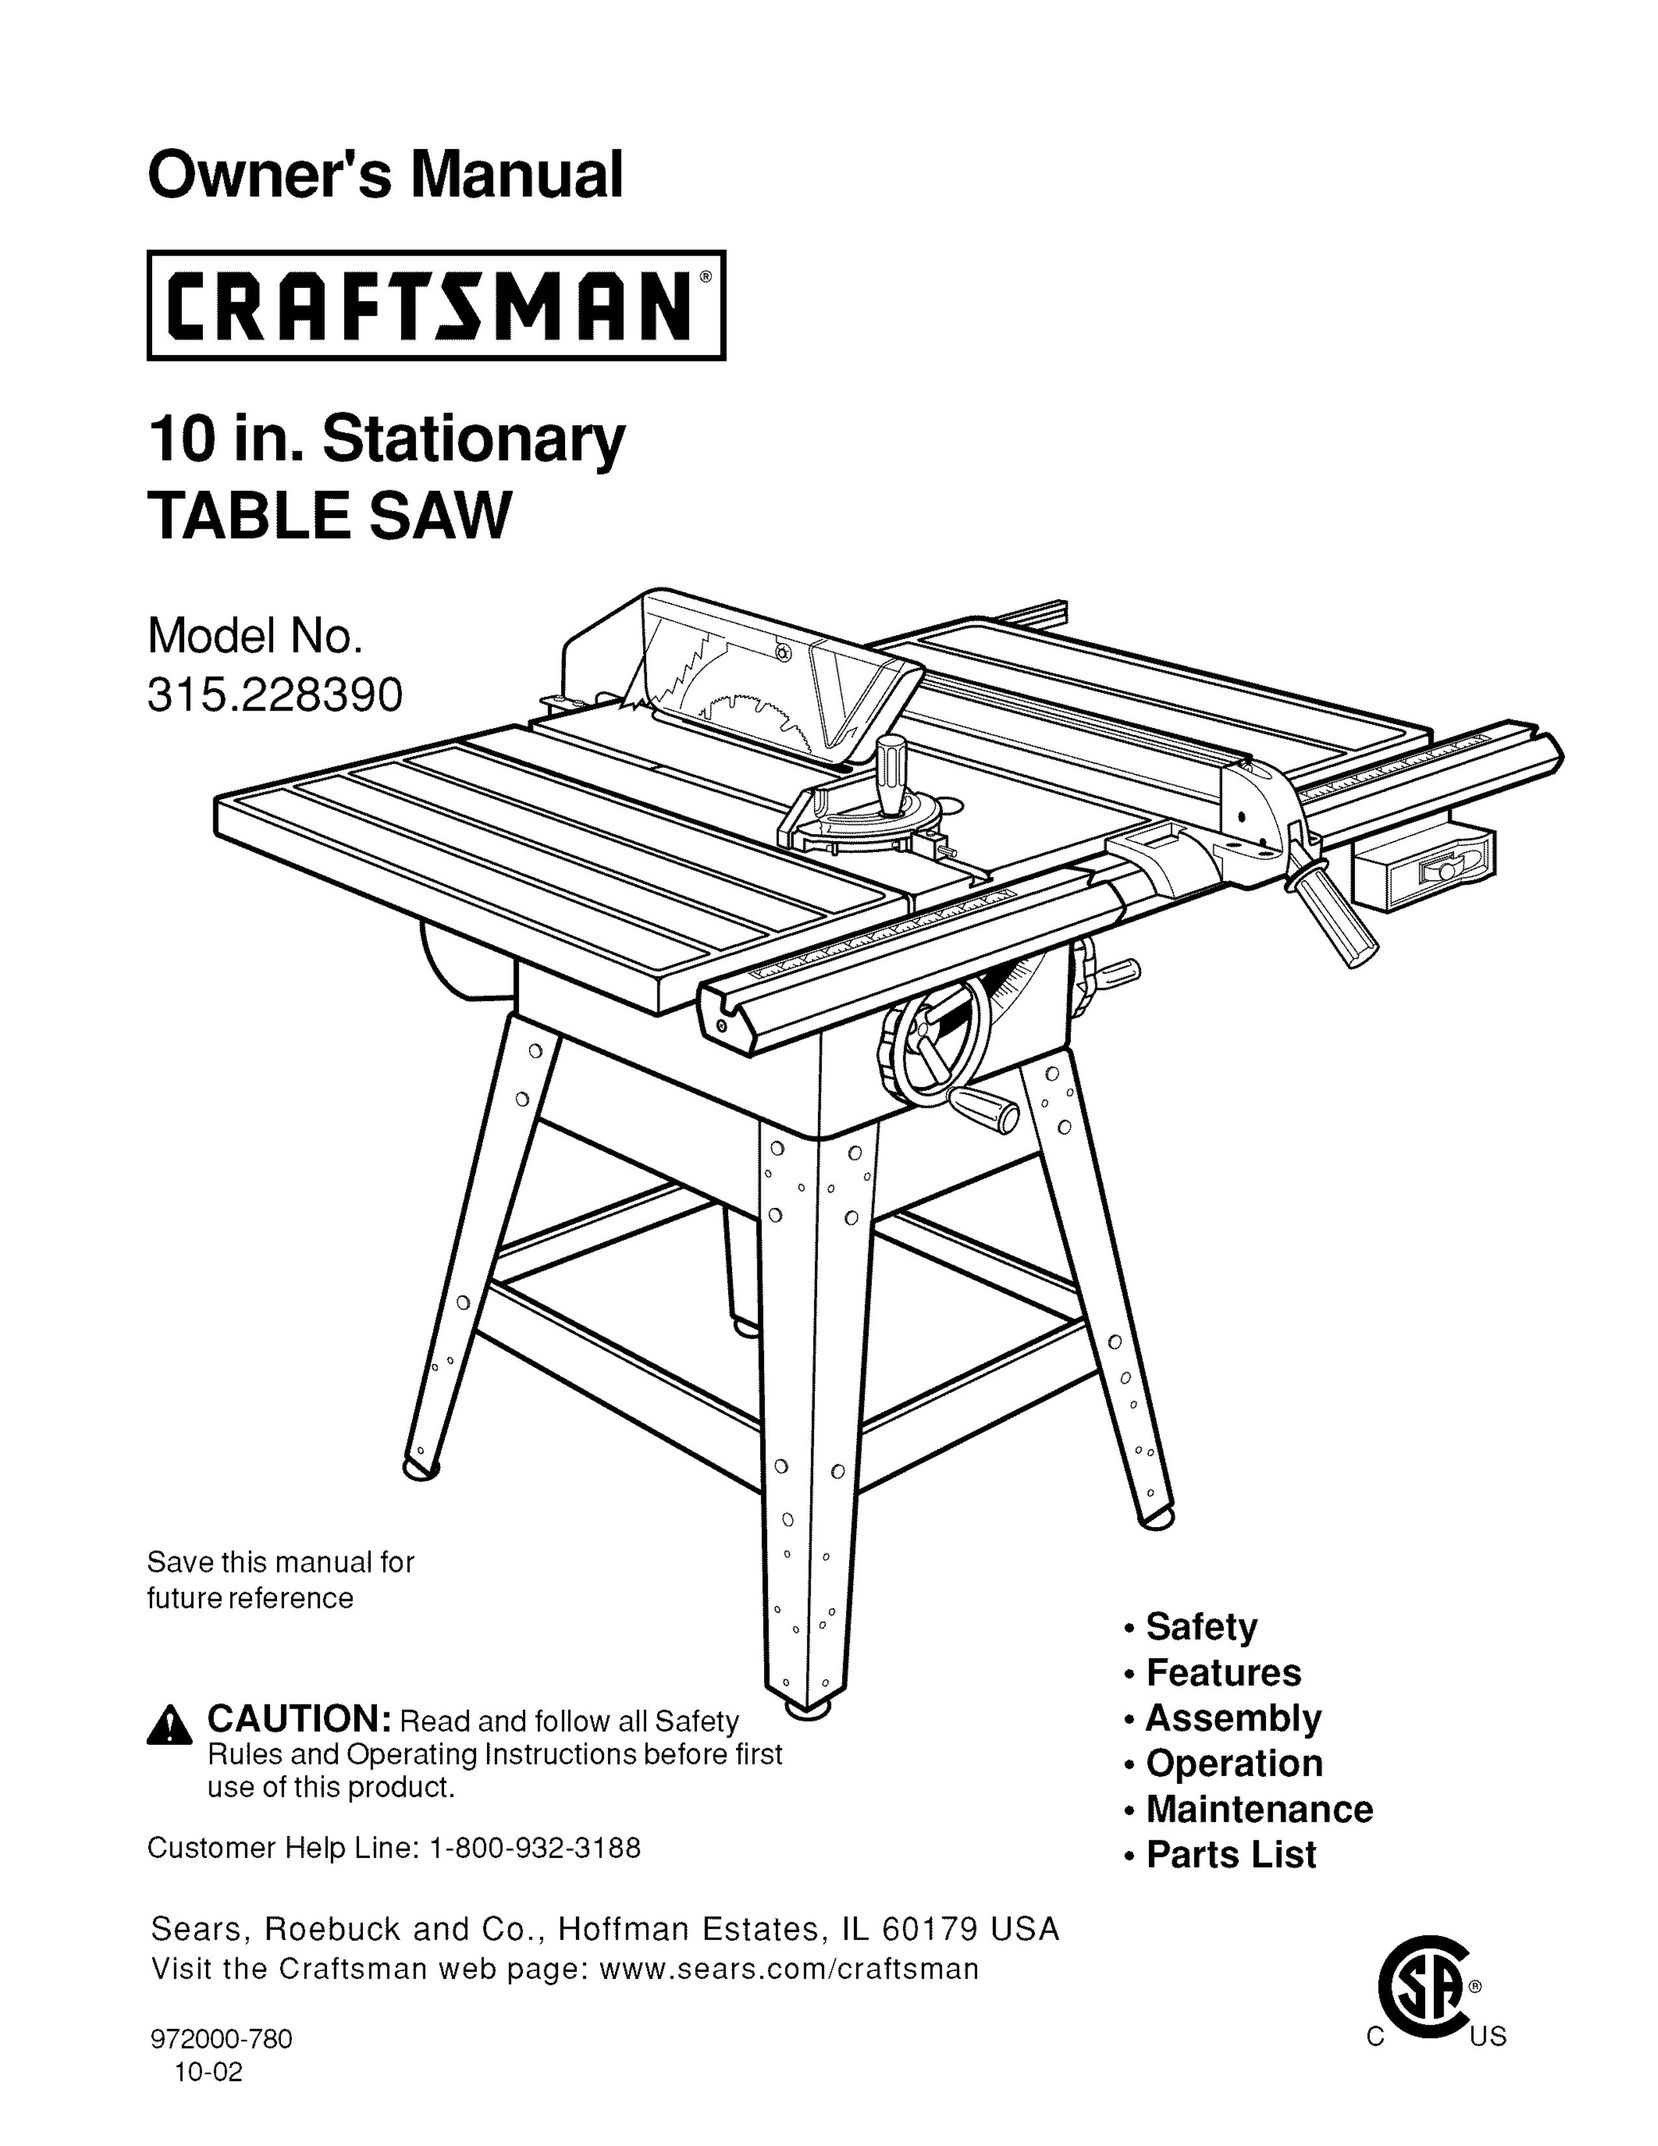 Craftsman 315.22839 Saw User Manual